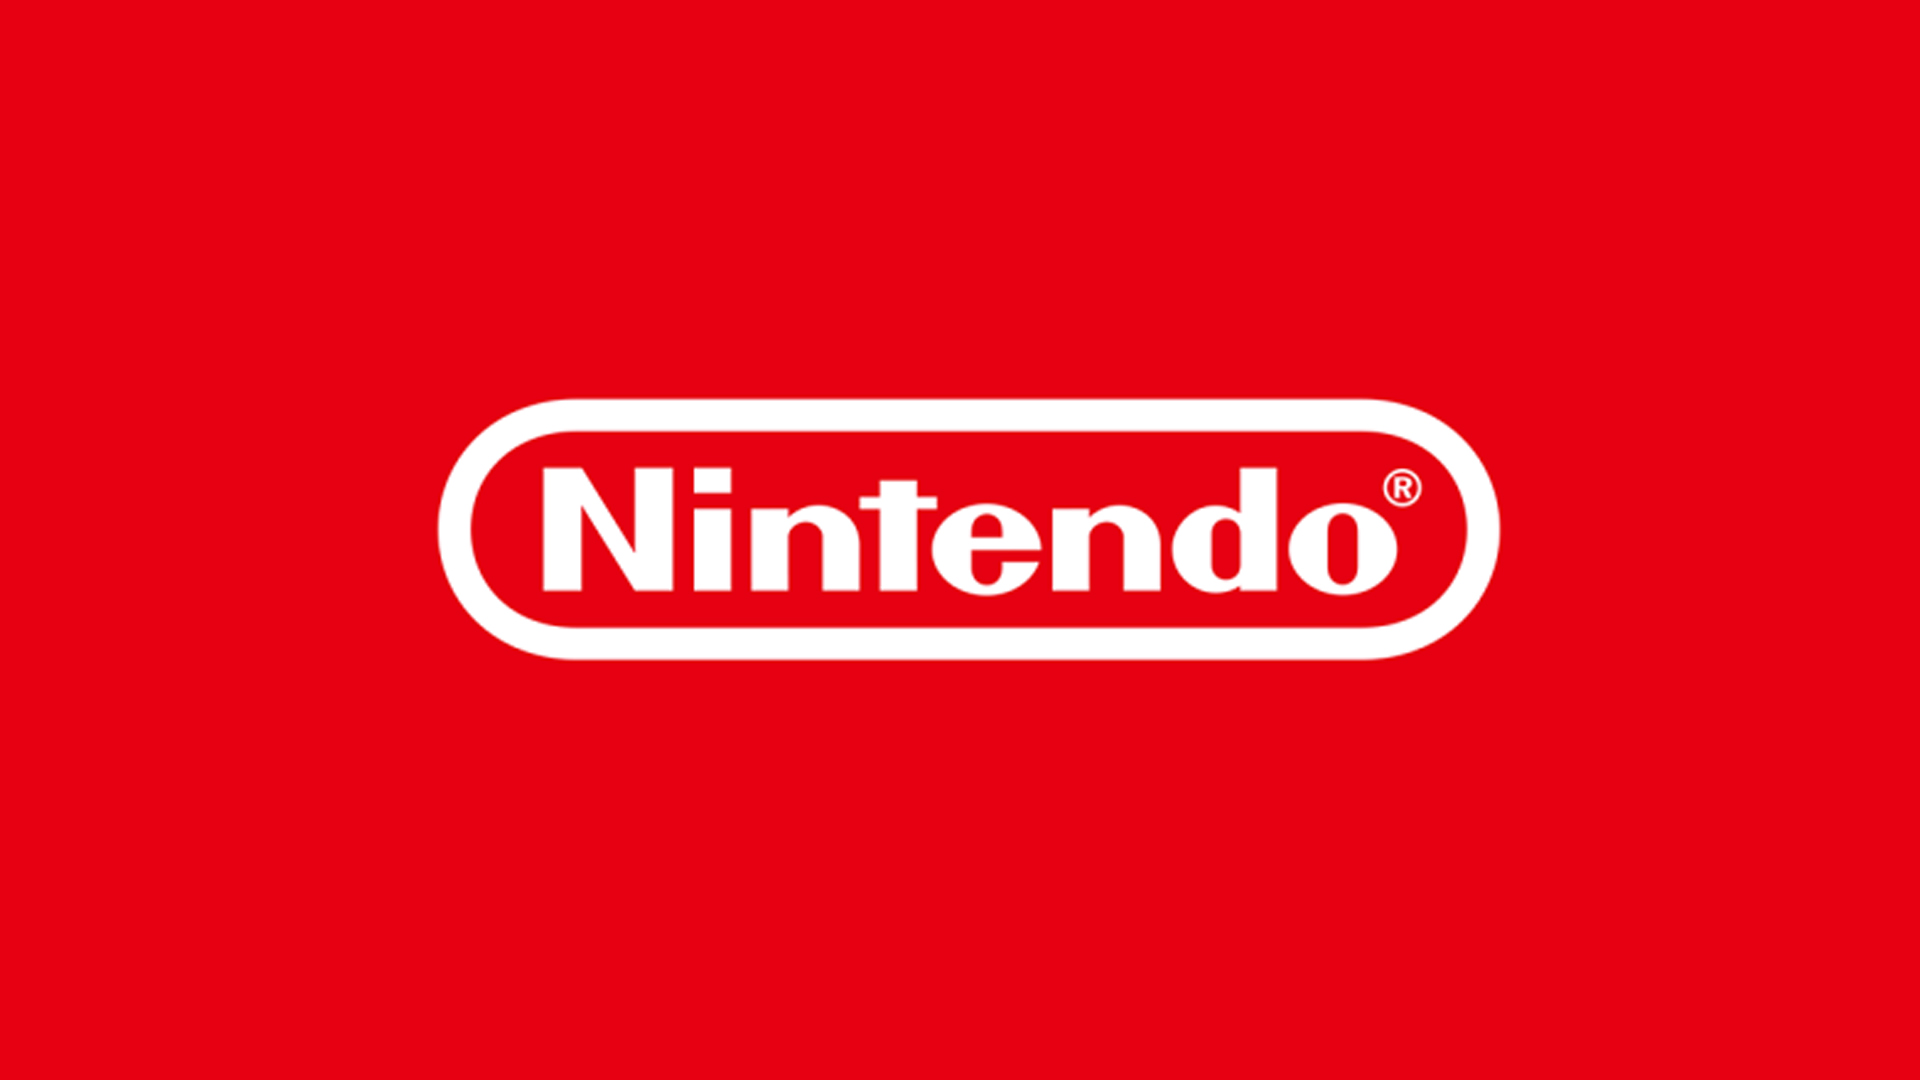 The Nintendo logo